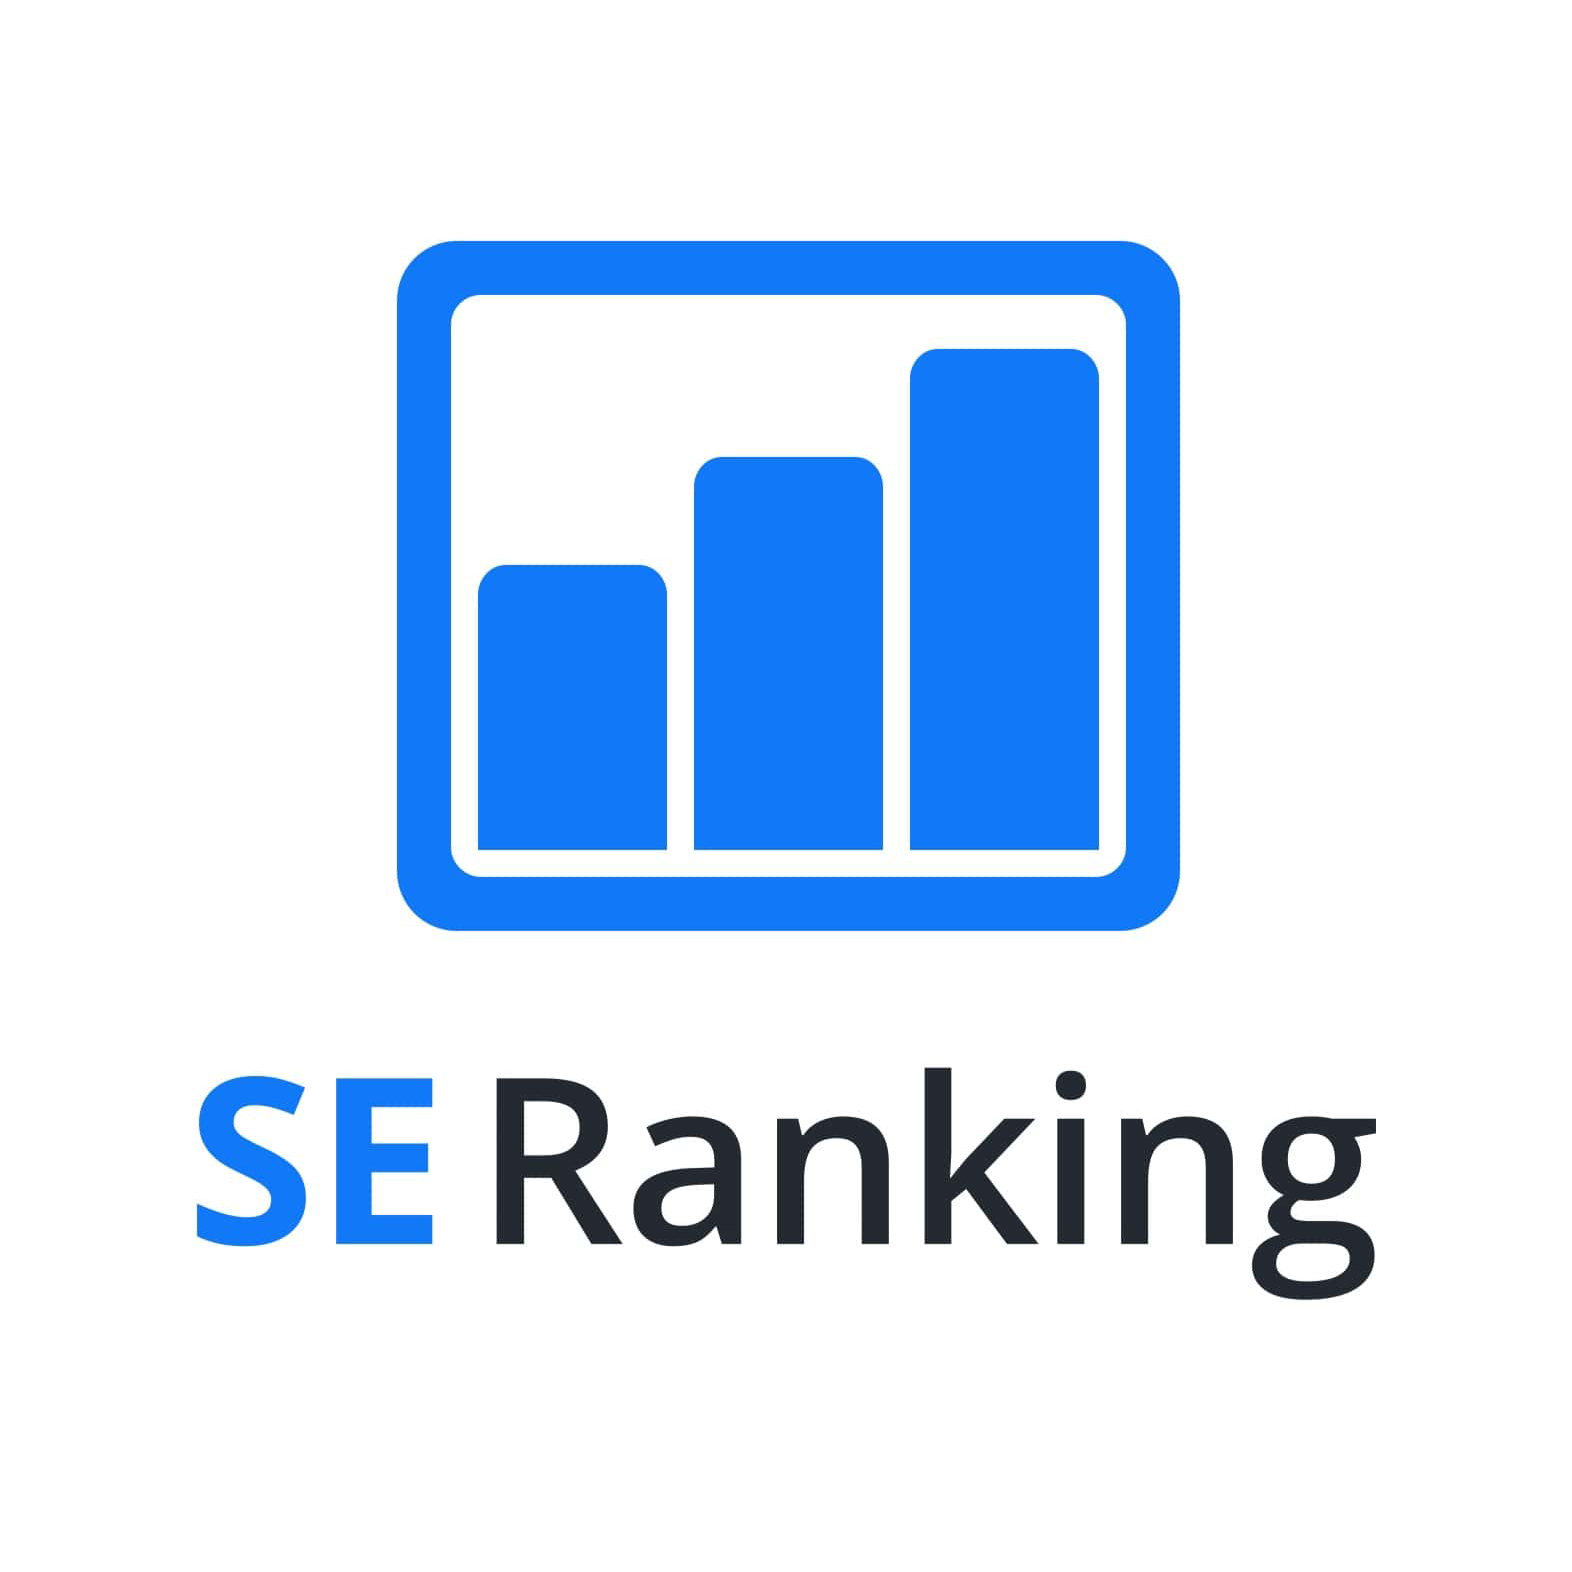 SEO tools SE Ranking logo